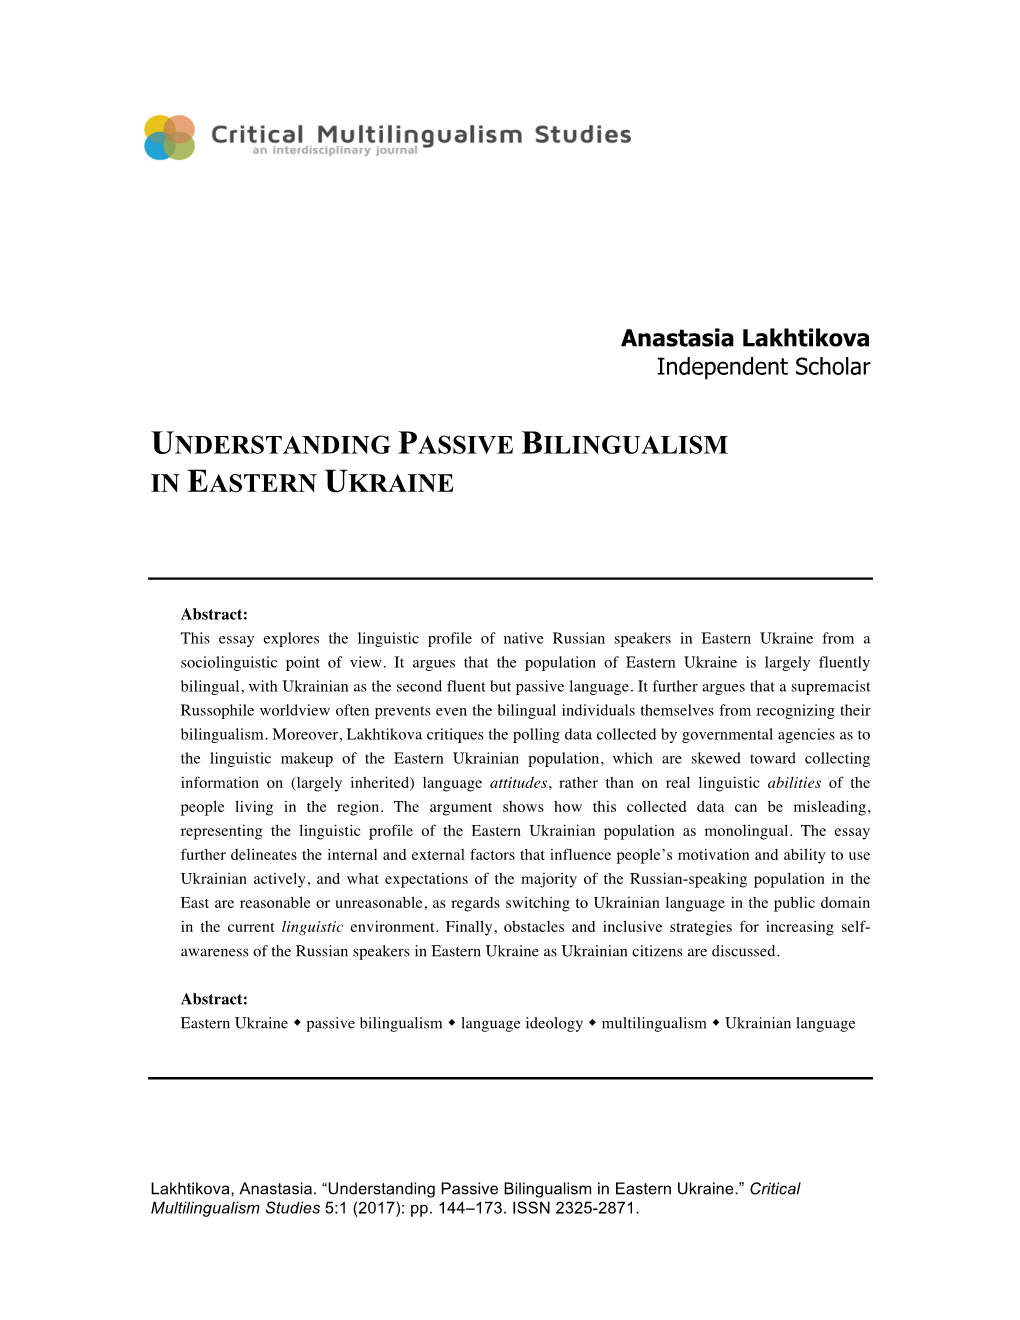 Understanding Passive Bilingualism in Eastern Ukraine